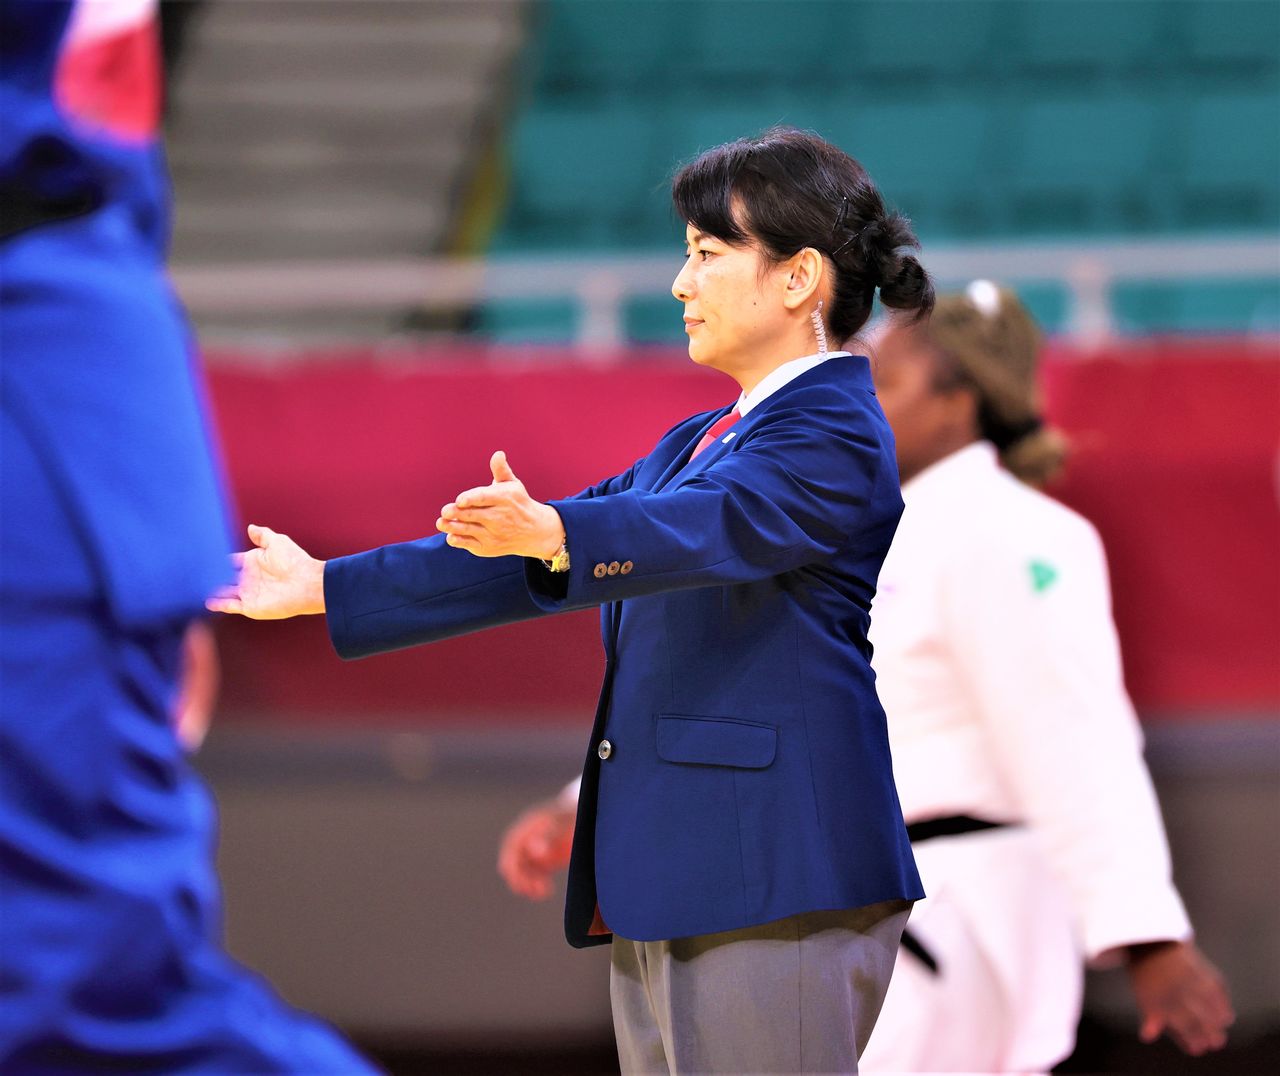 السيدة أمانو أكيكو، تتولى إدارة إحدى مباريات الجودو في أولمبيات طوكيو. وهي أيضا لاعبة جودو تحمل رتبة سبعة دان. وهي أيضا أول رئيسة (الجيل الخامس عشر) لفنون الألعاب النارية التقليدية ”كاغيا“ (30/7/2021، نيبون بودوكان في طوكيو)، جيجي برس.